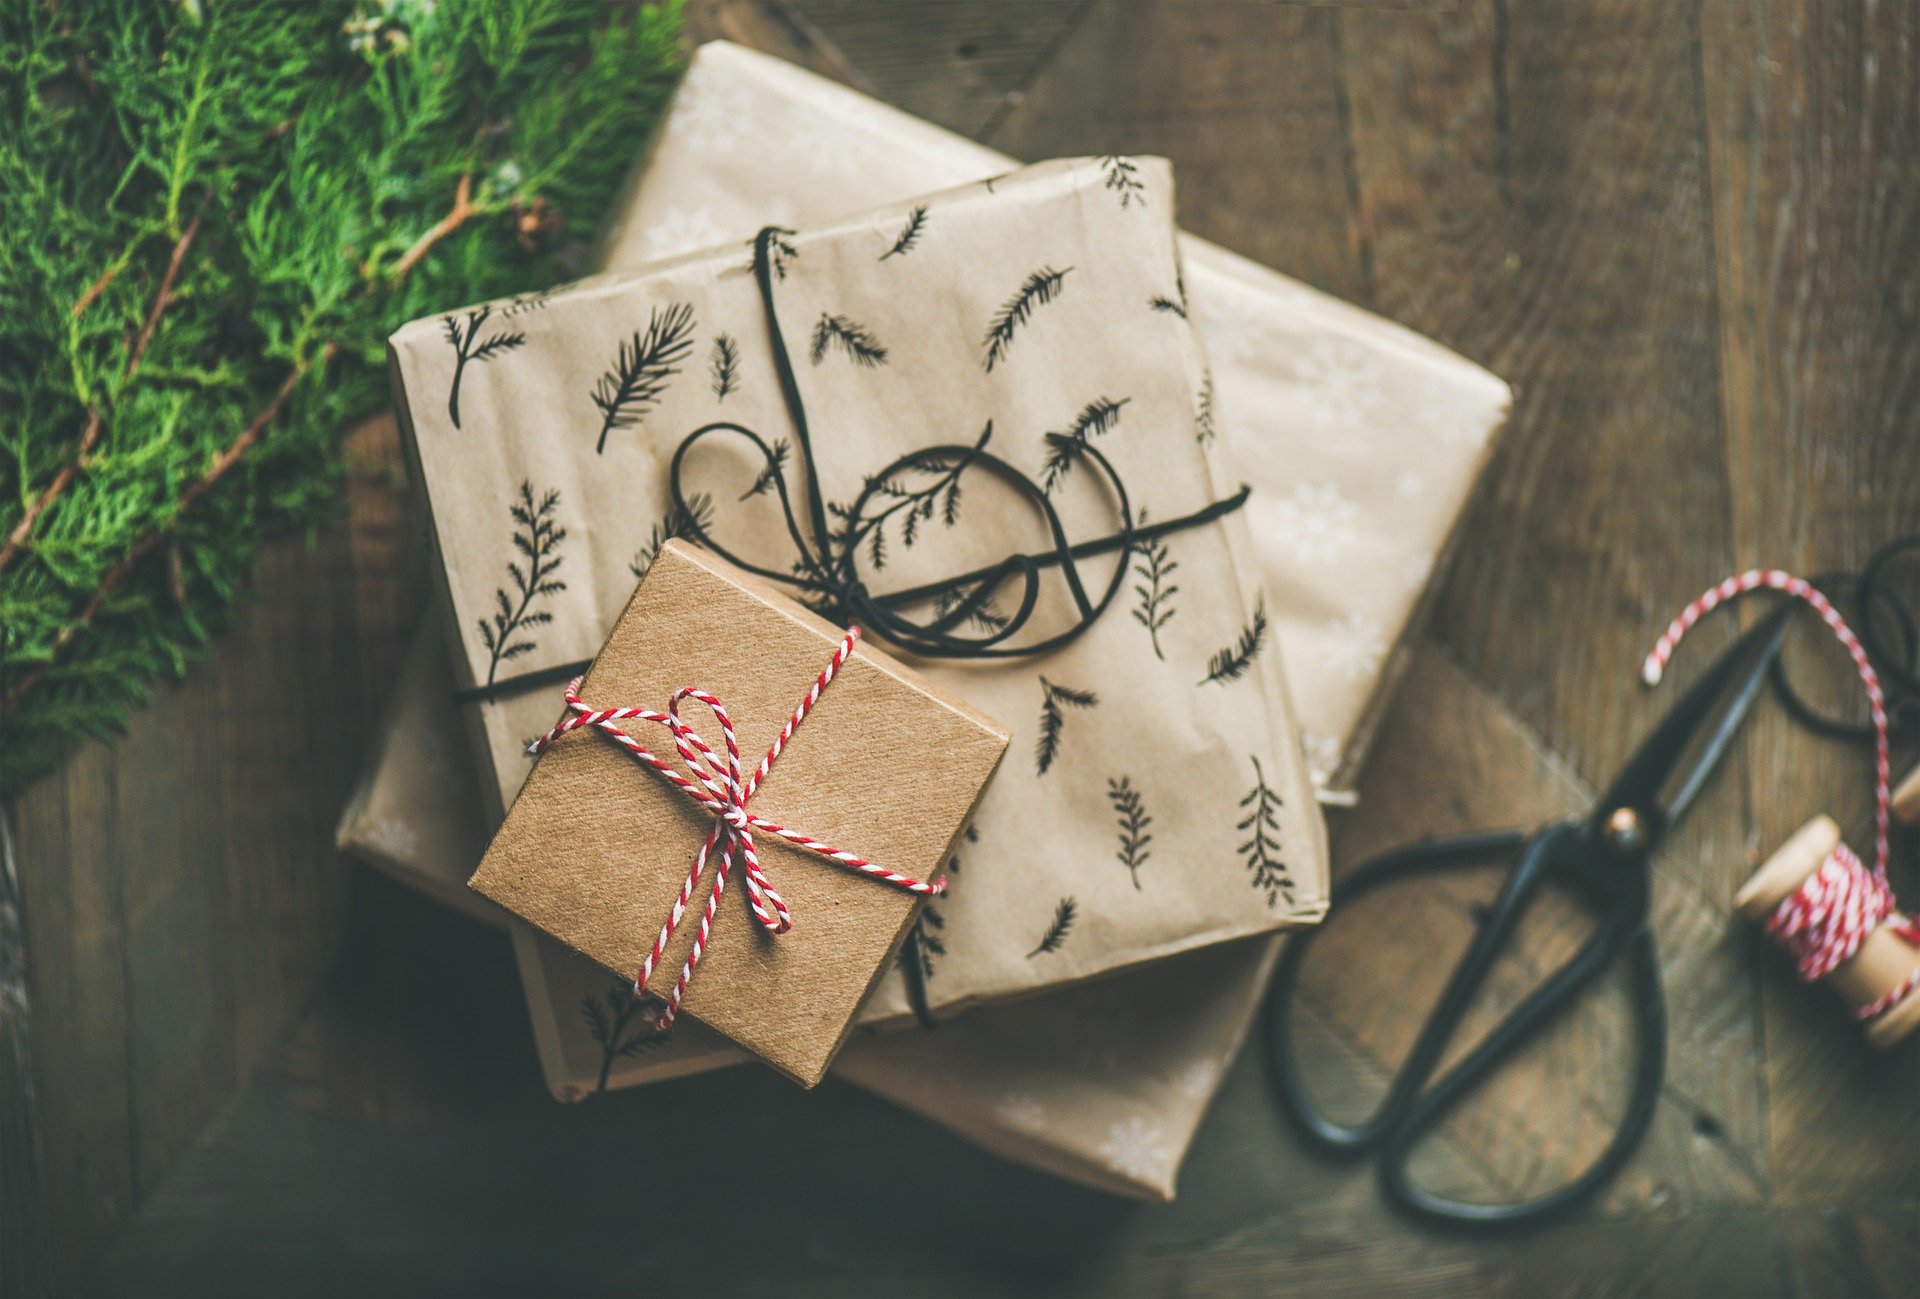 Comment faire de beaux paquets cadeaux ?